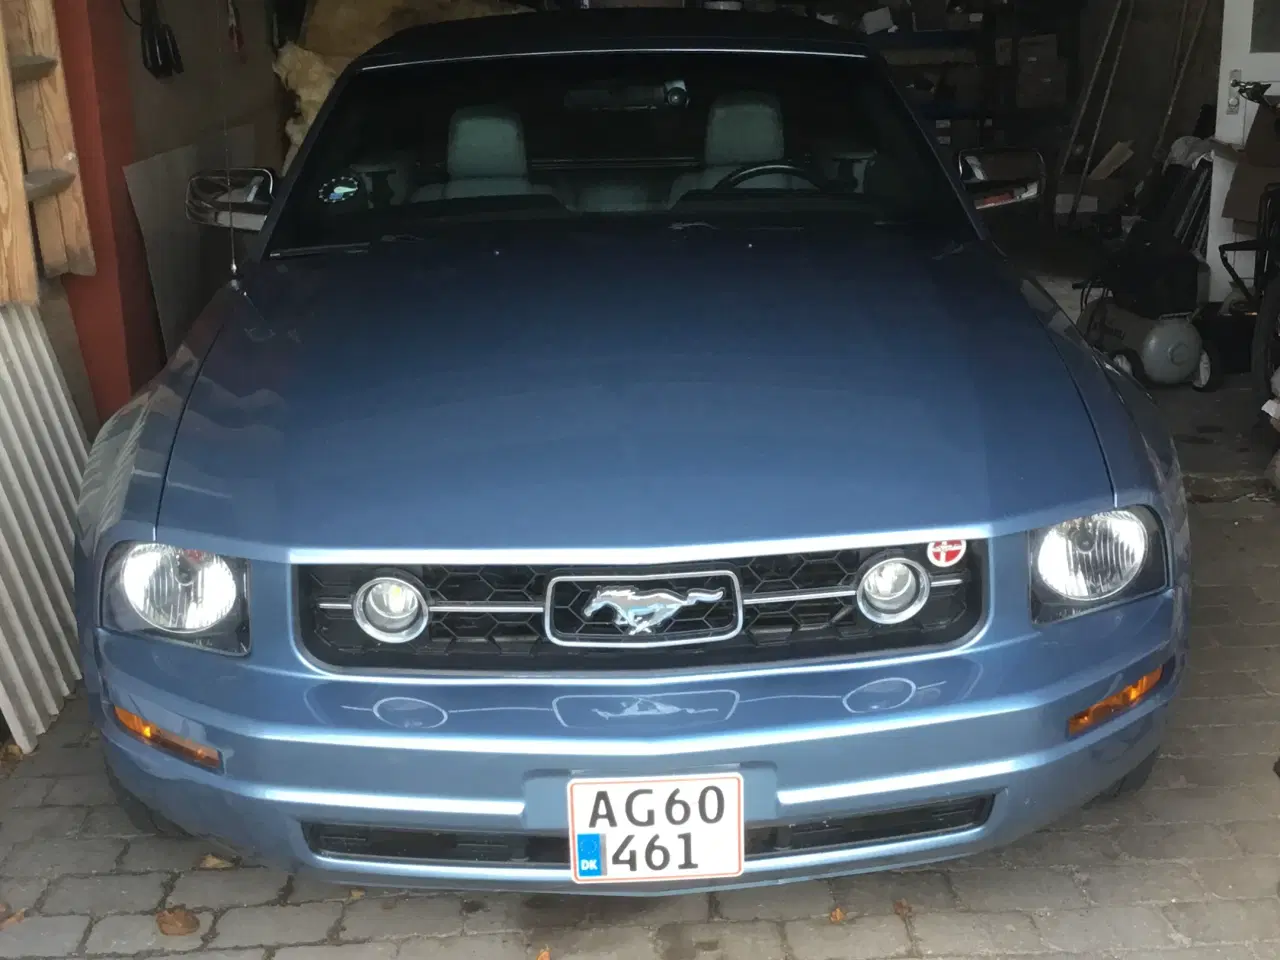 Billede 1 - Ford Mustang 4,0 cabriolet årg 2006 